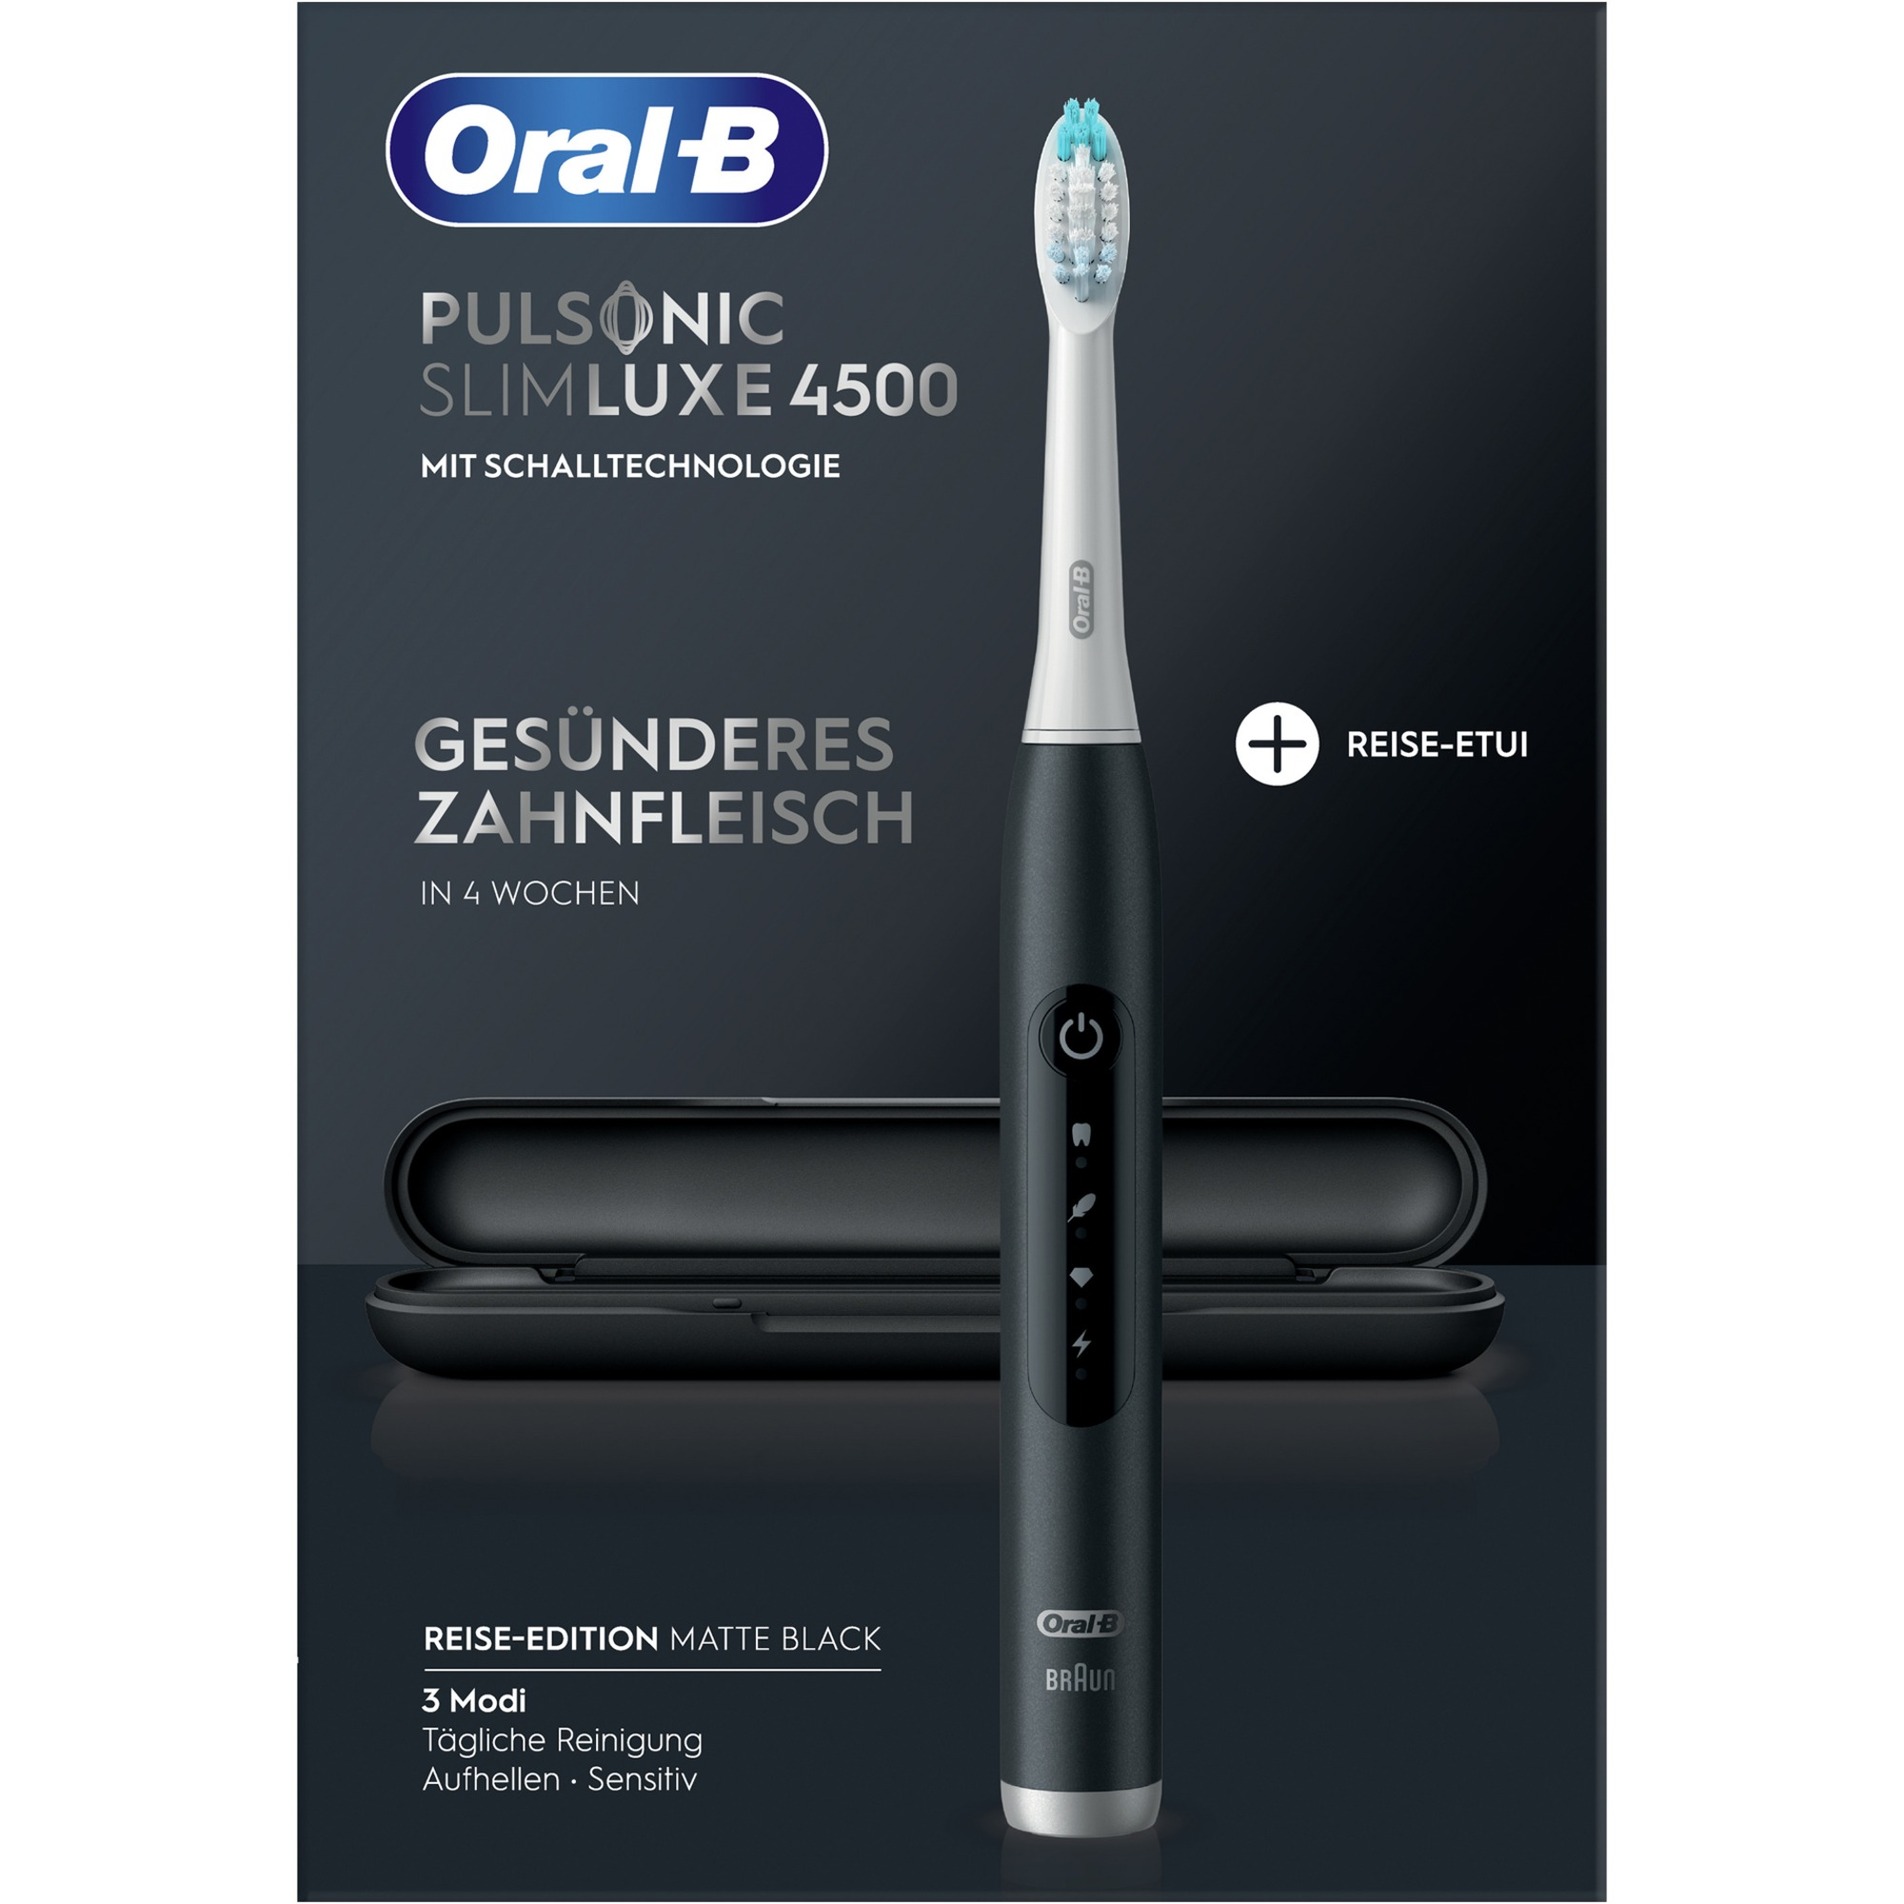 Image of Alternate - Oral-B Pulsonic Slim Luxe 4500 Reise-Edition, Elektrische Zahnbürste online einkaufen bei Alternate